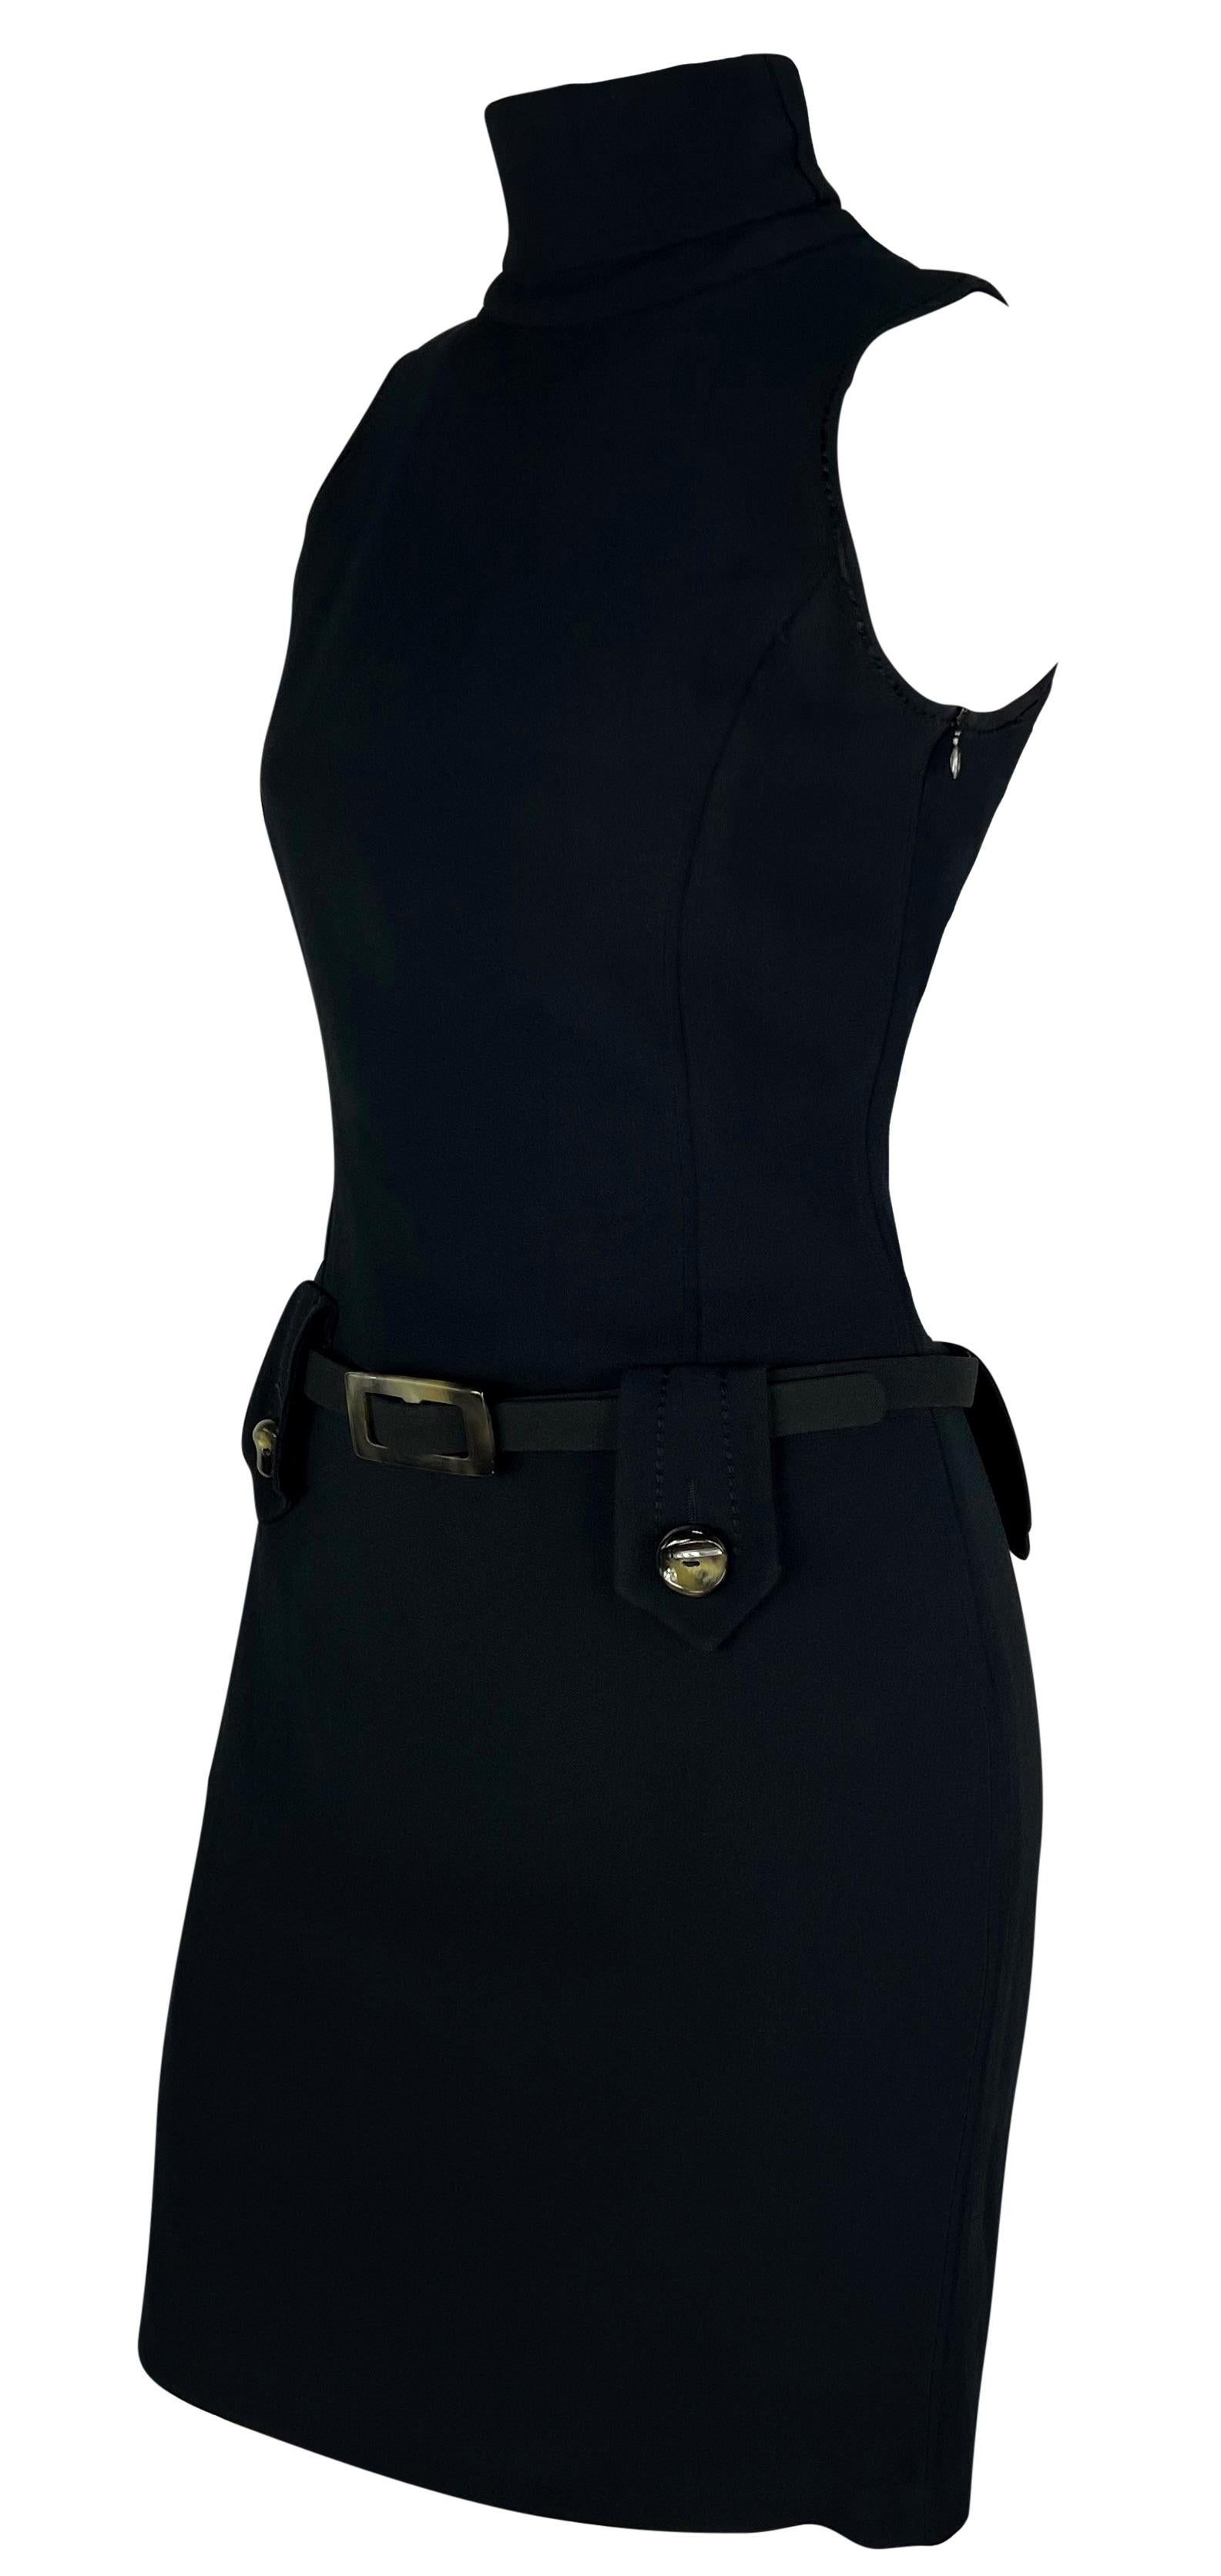 Datant des années 1990, cette mini robe noire sans manches de style Bond girl de Paco Rabanne est dotée d'une encolure dégagée. La robe est complétée par des passants de ceinture et une ceinture intégrée. Chaque passant de ceinture est sécurisé par